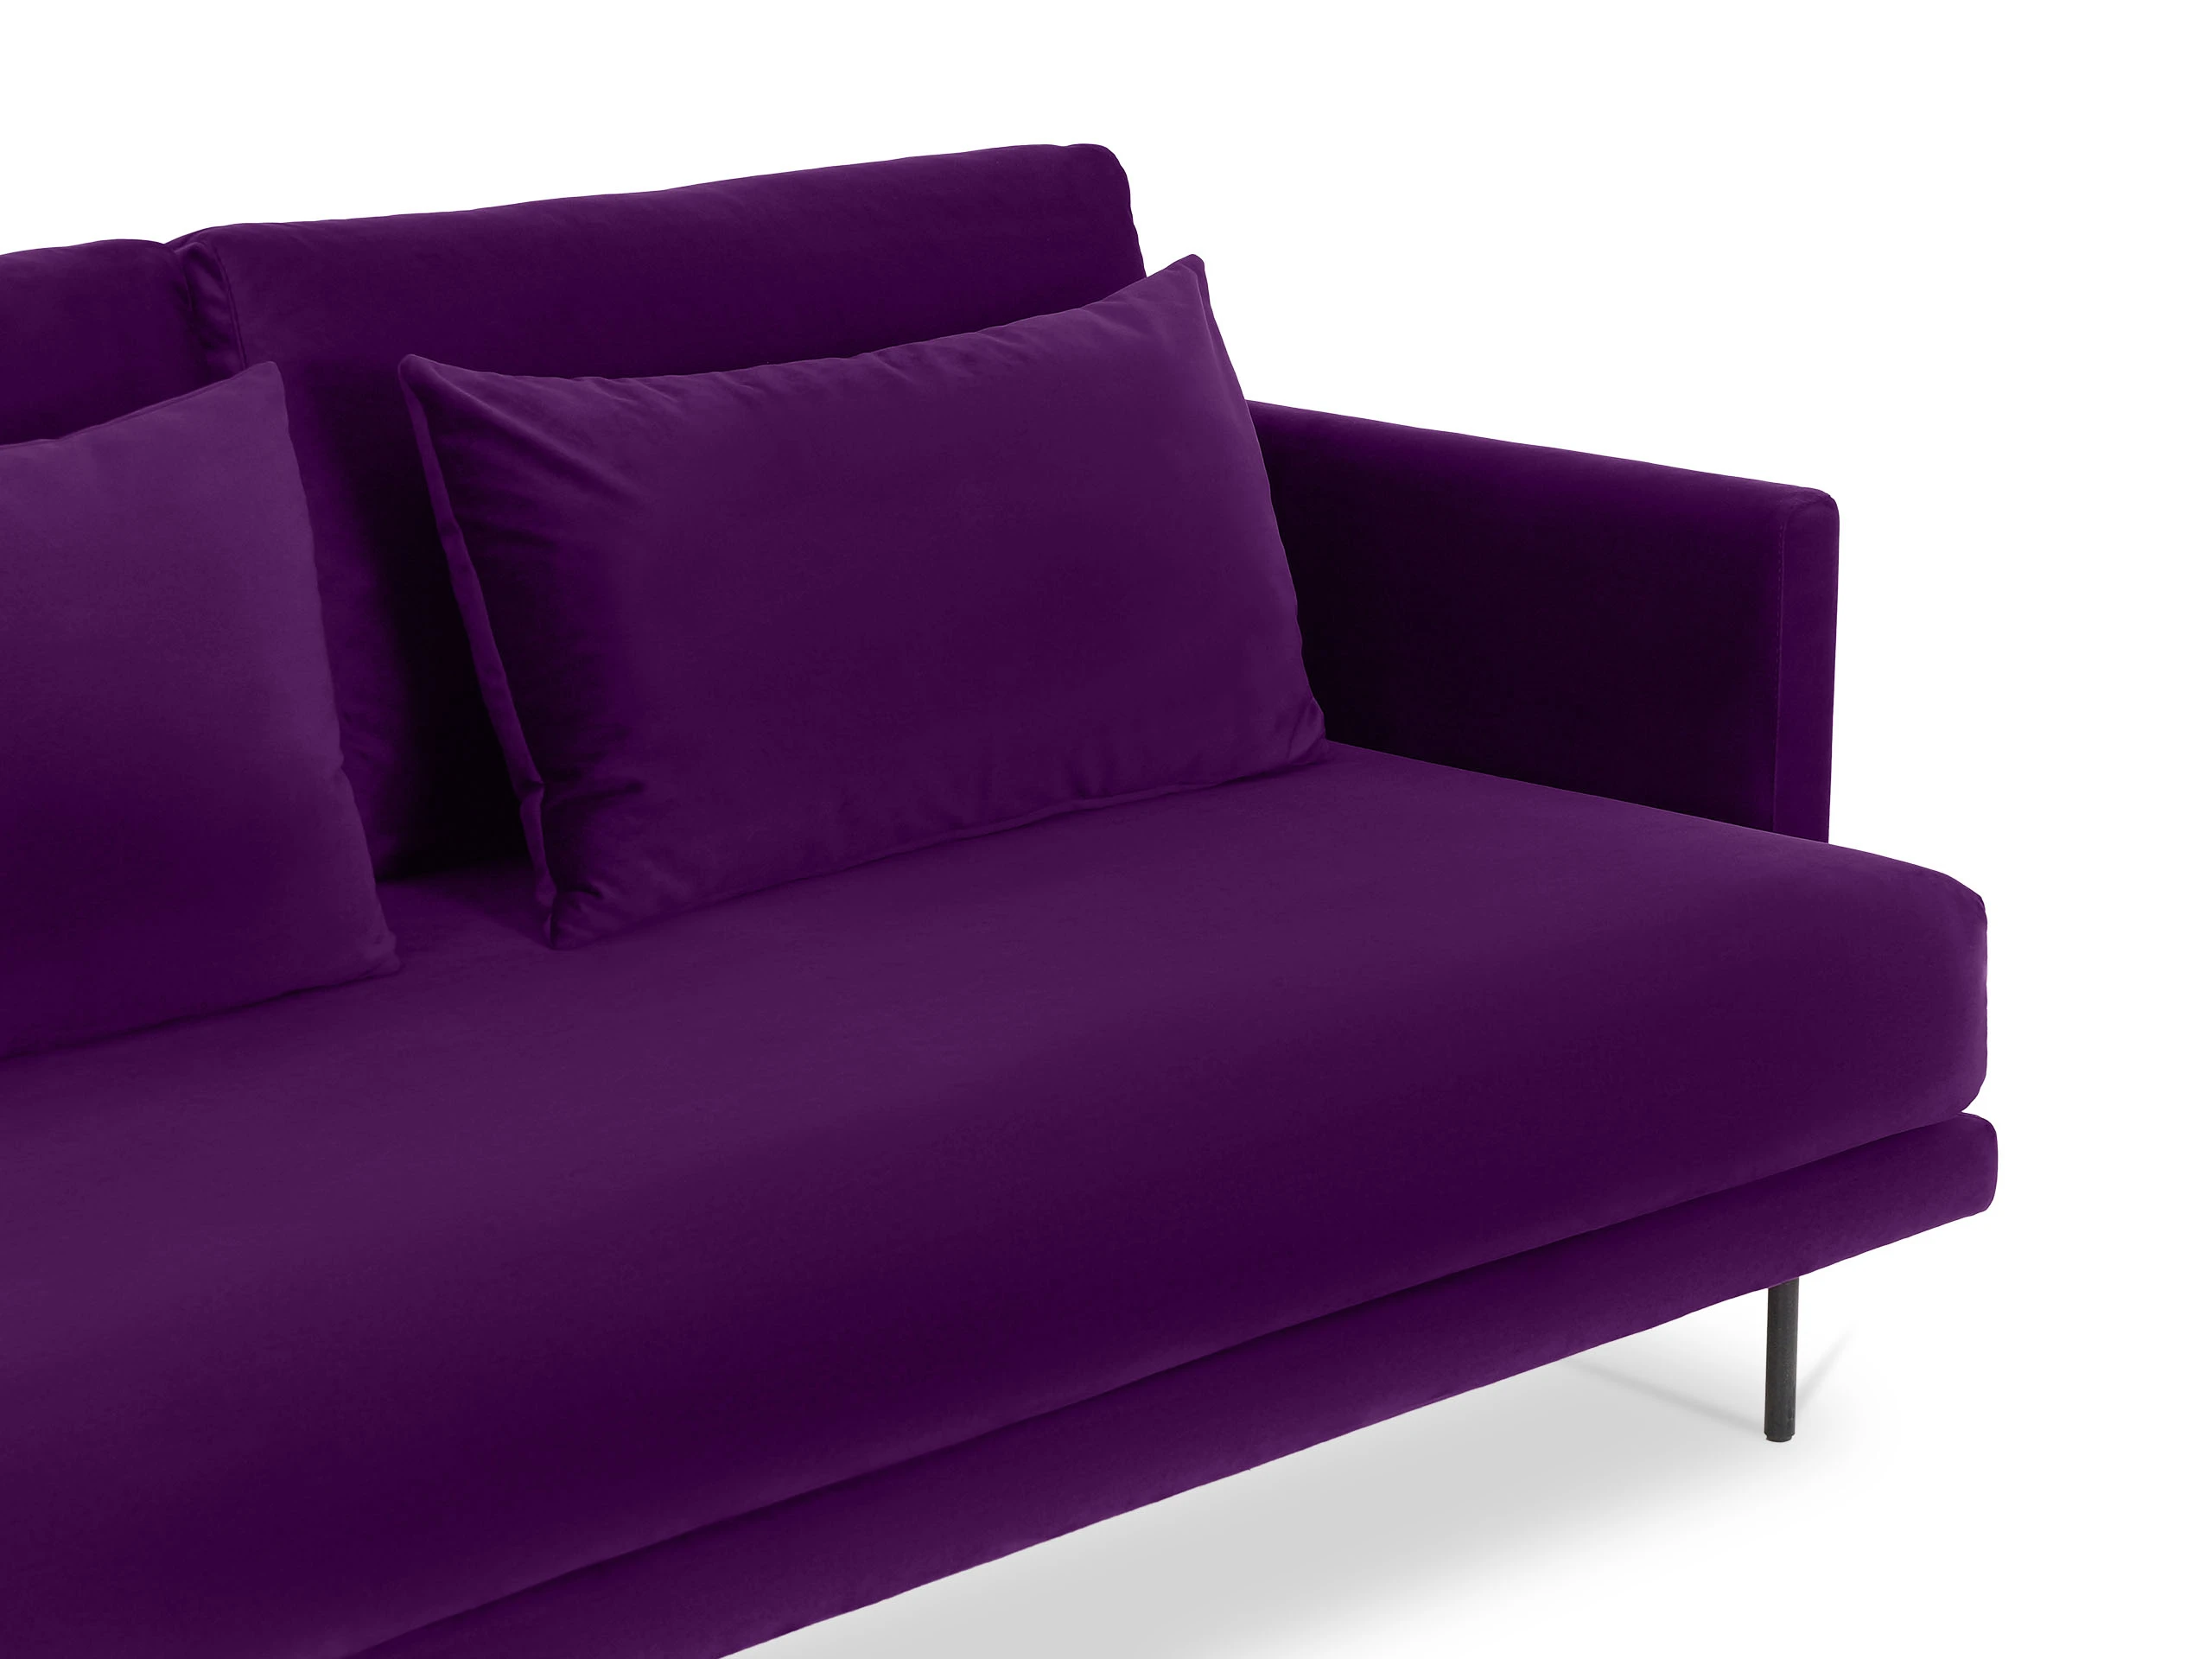 Кушетка Ricadi со столиком из мрамора фиолетовый 865754